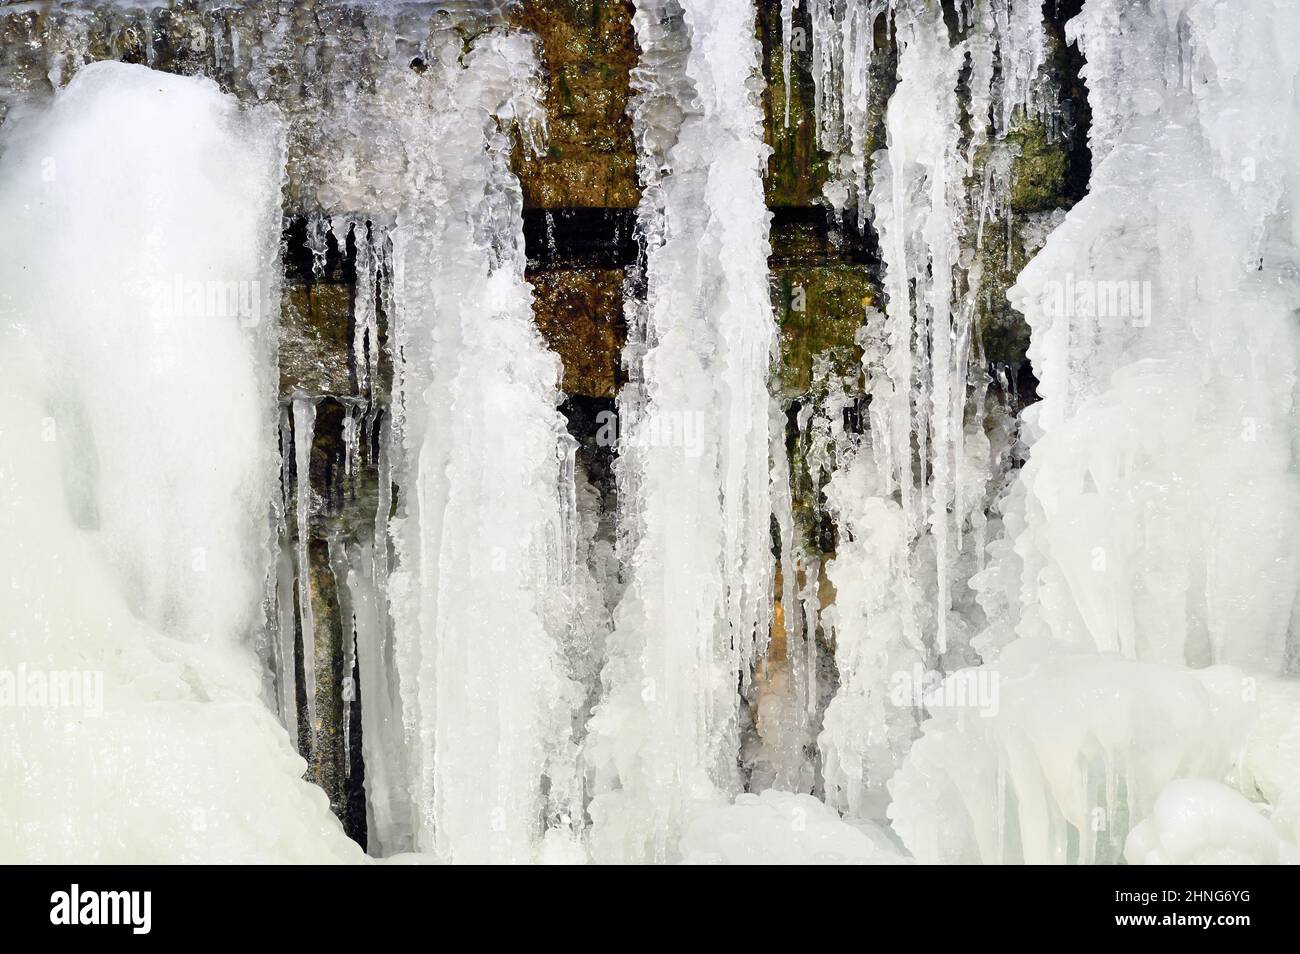 St. Charles, Illinois, Stati Uniti. Una cascata in torrente formata da continuo al di sotto delle temperature gelide. Foto Stock